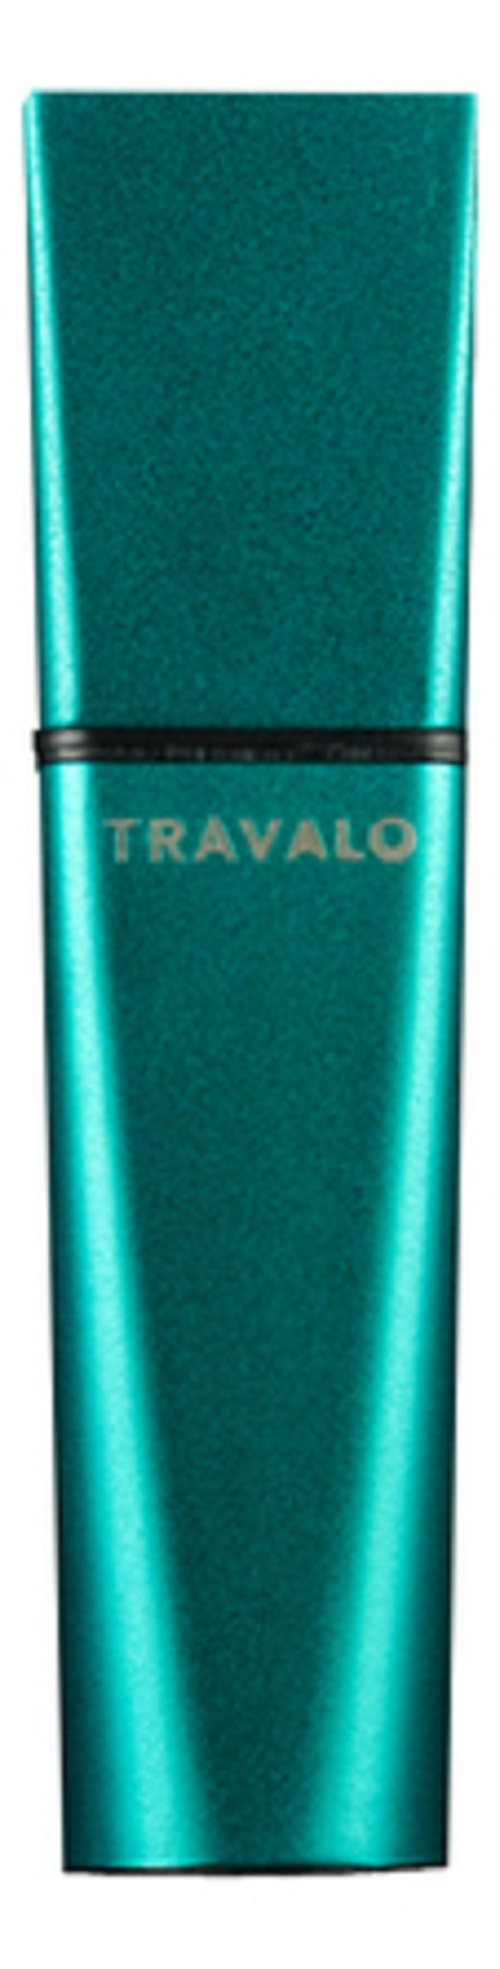 Атомайзер Travalo Obscura Perfume Spray 5мл Green sen7 атомайзер синий